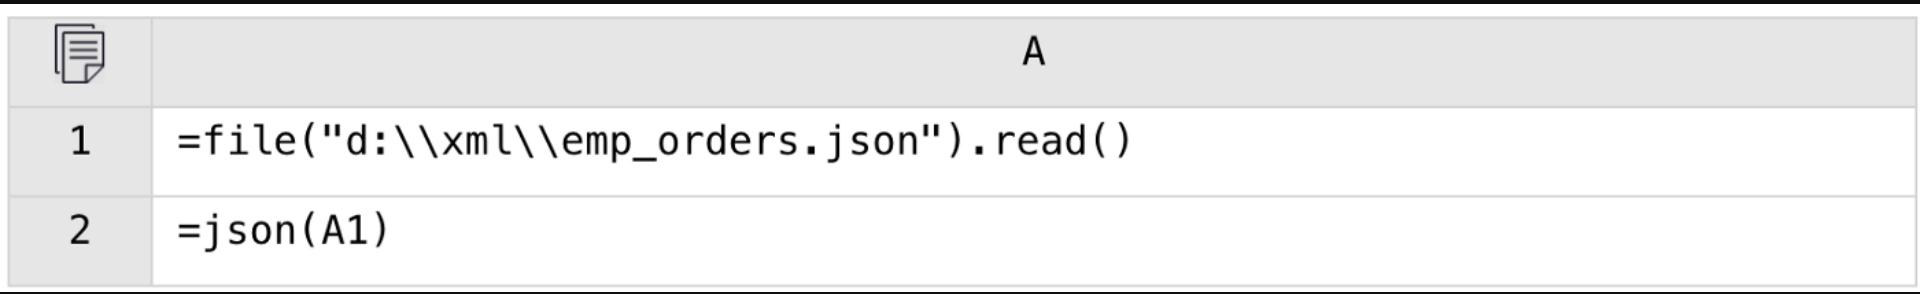 开源 SPL 帮助 Java 处理开放格式的文件：TXT、CSV、JSON、XML 和 XLS